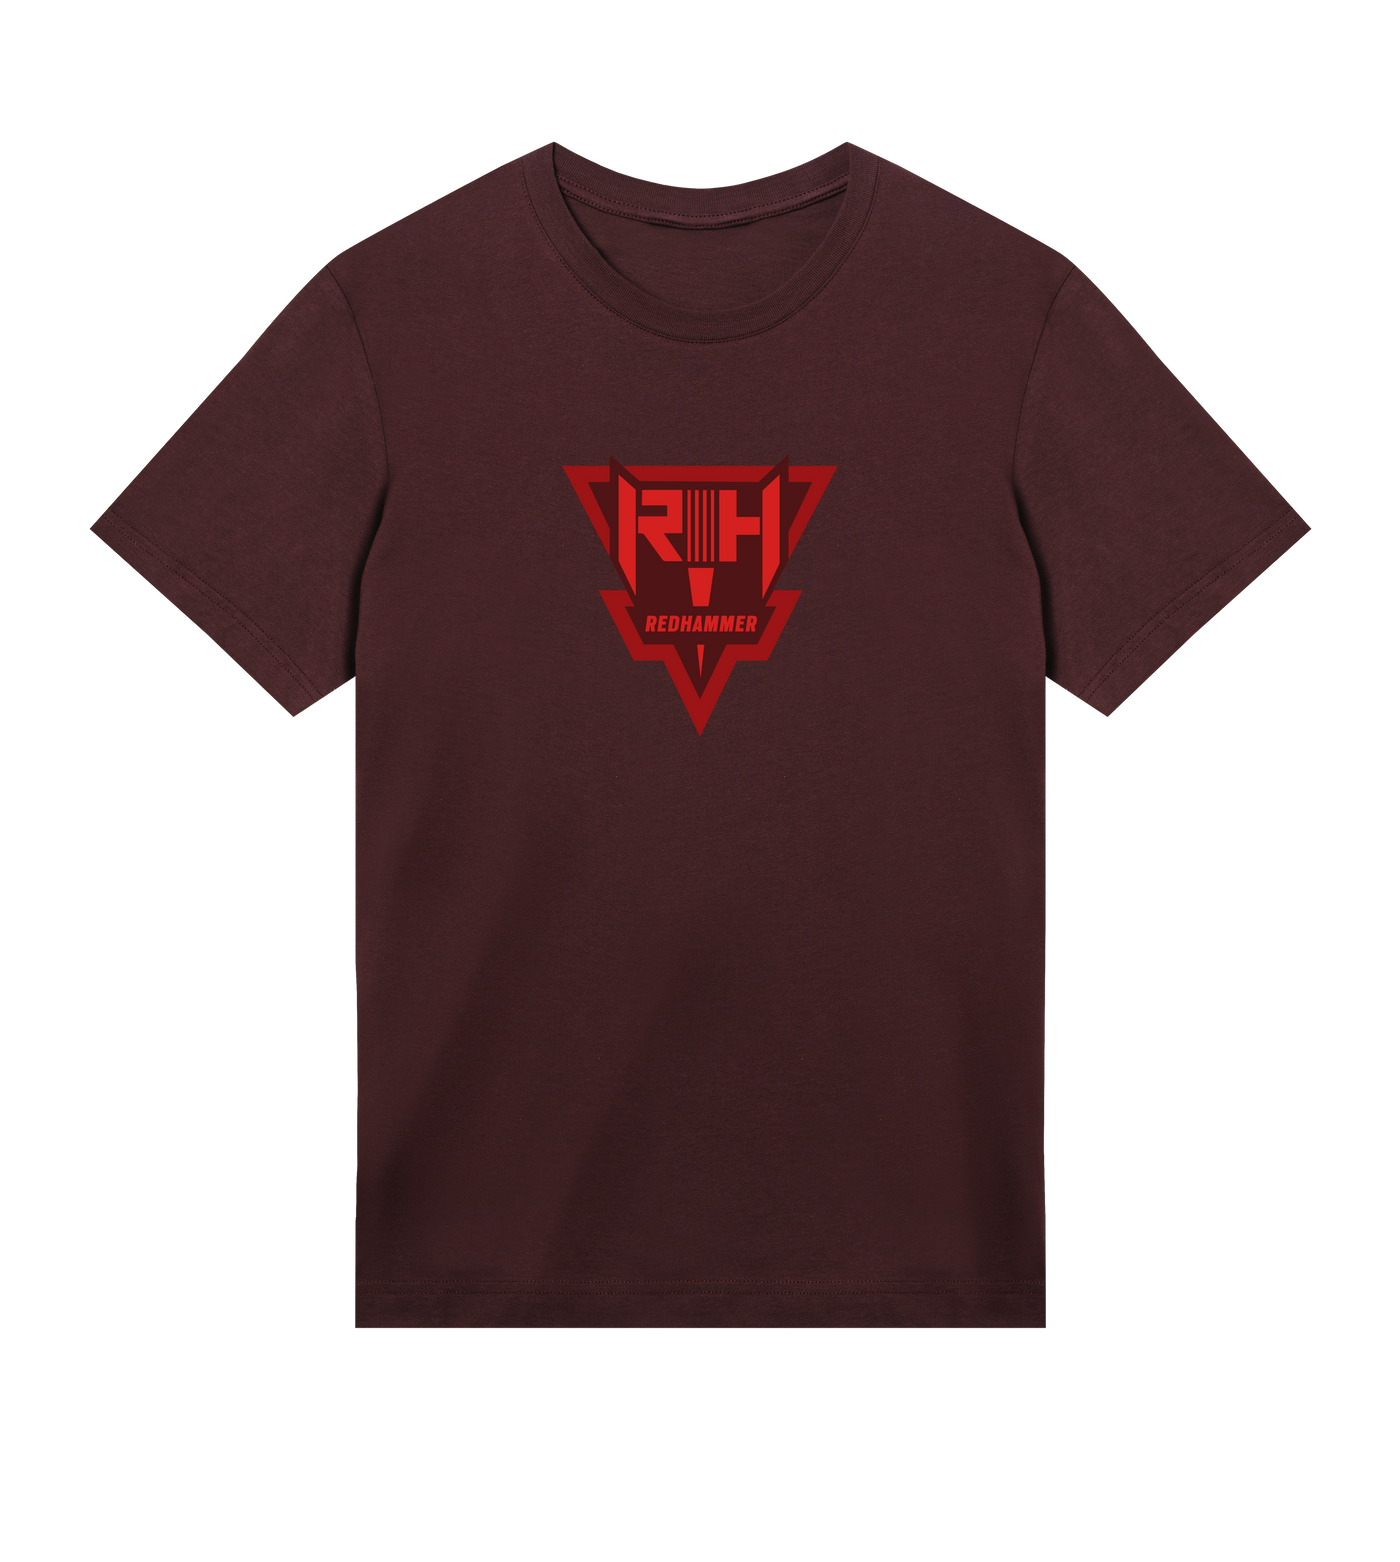 6 SIEGE - Redhammer T-shirt